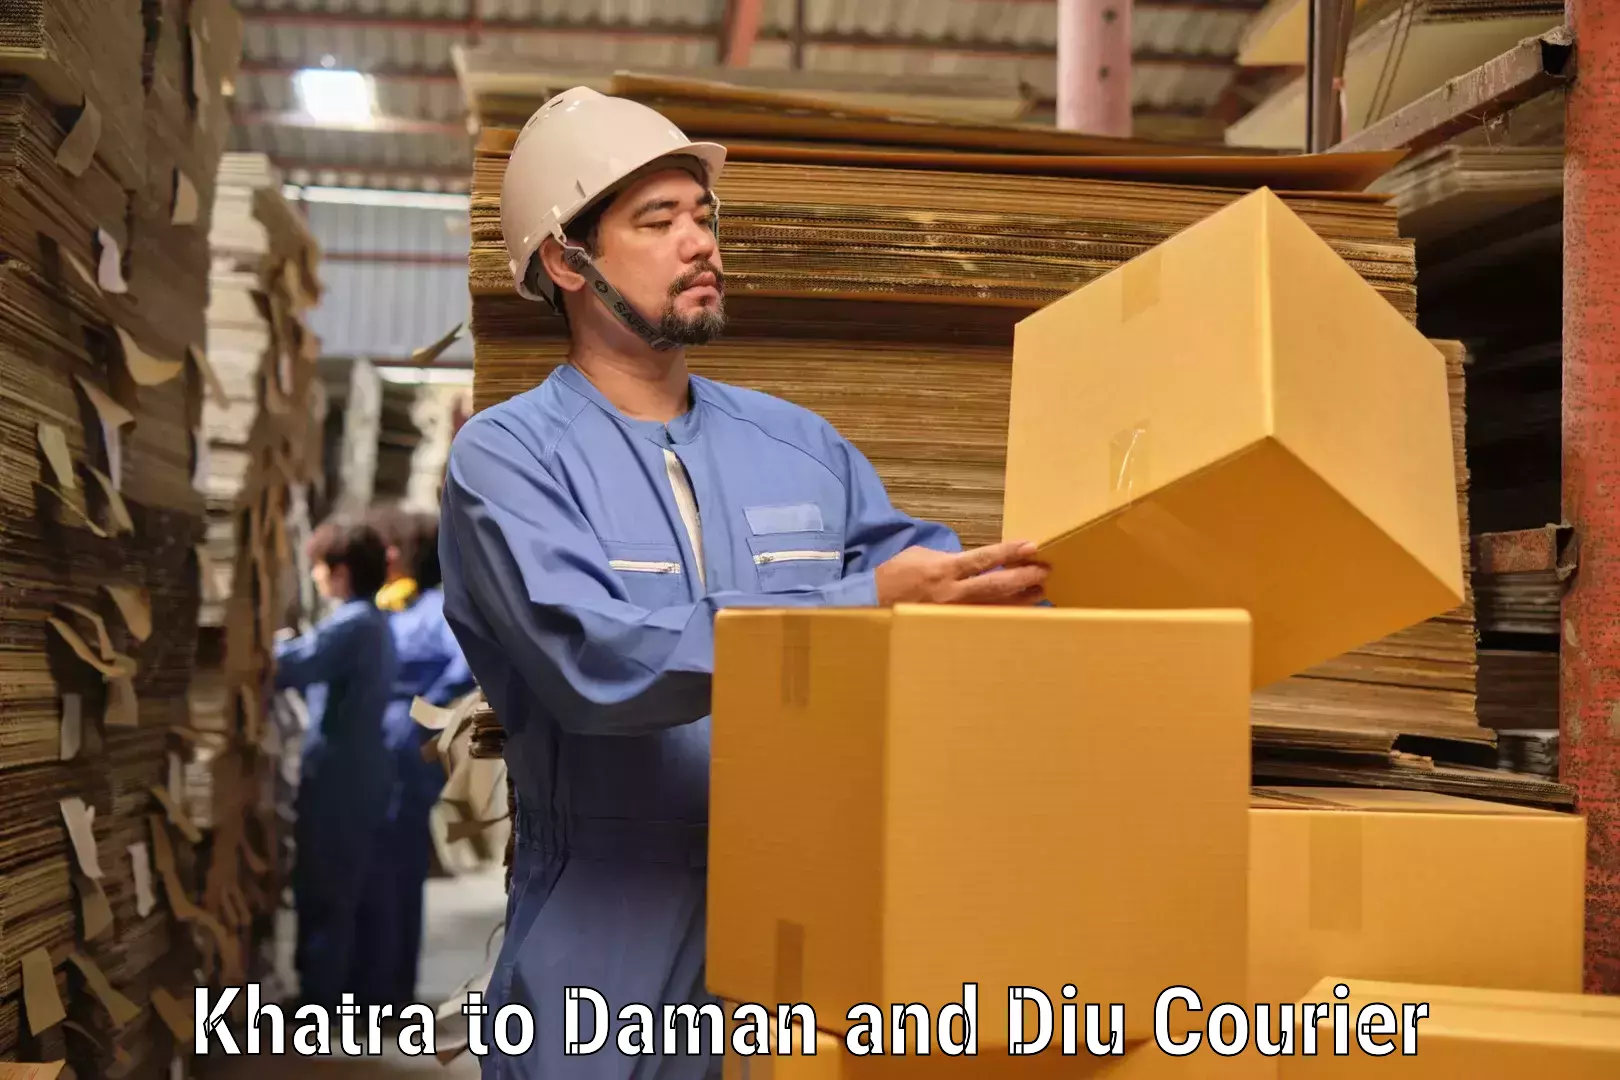 Tech-enabled shipping Khatra to Diu